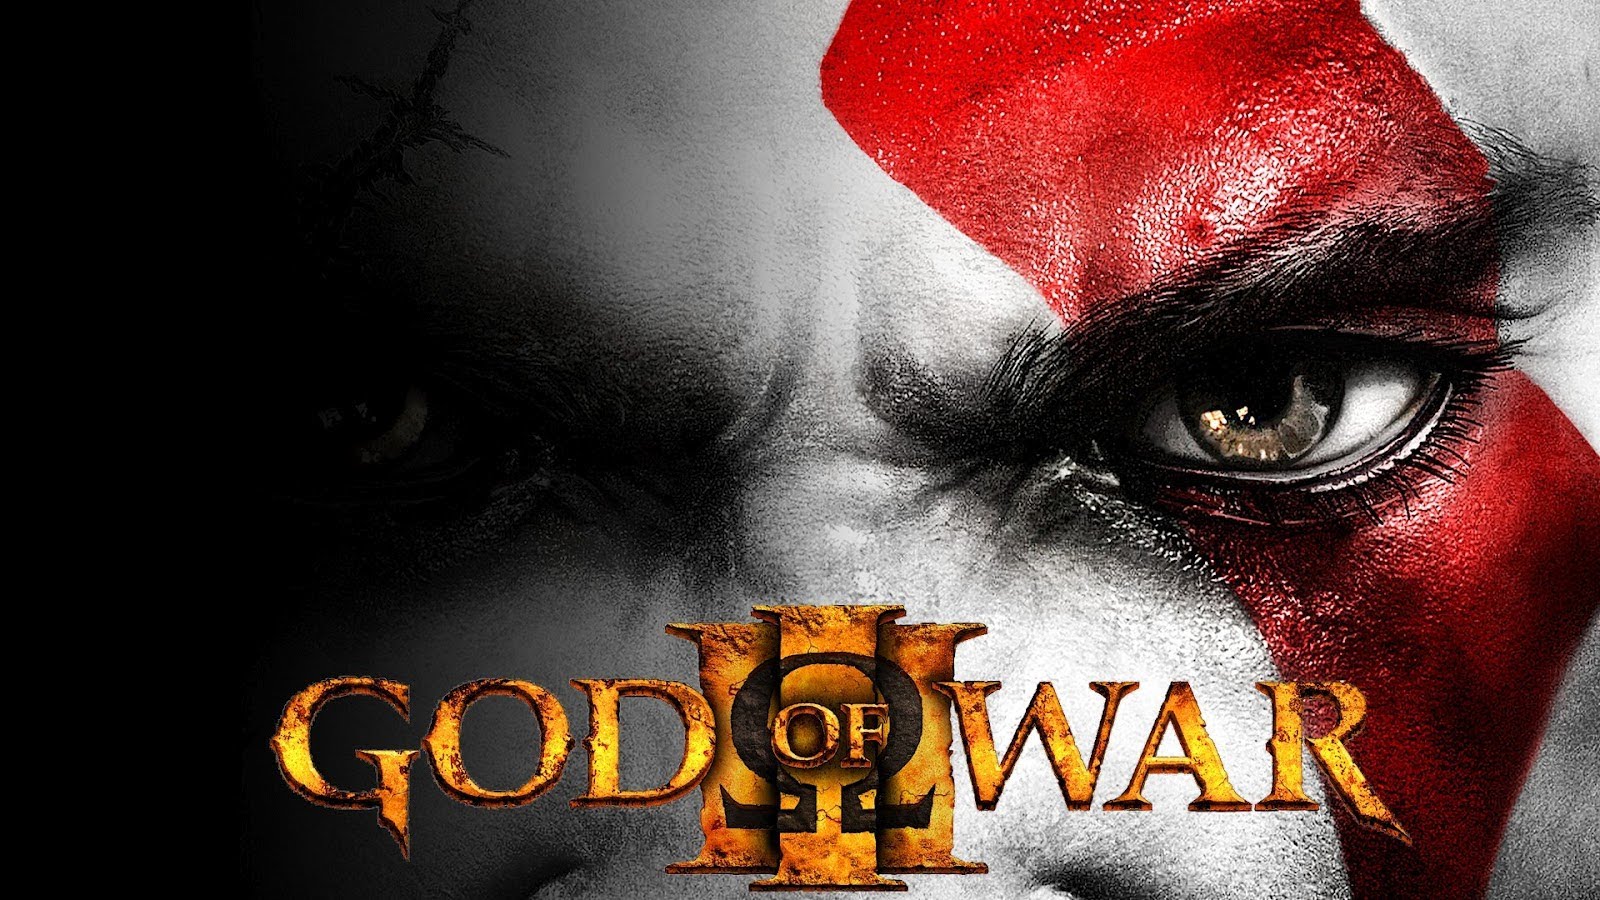 God of War 3 v/s God of War 2 v/s God of War